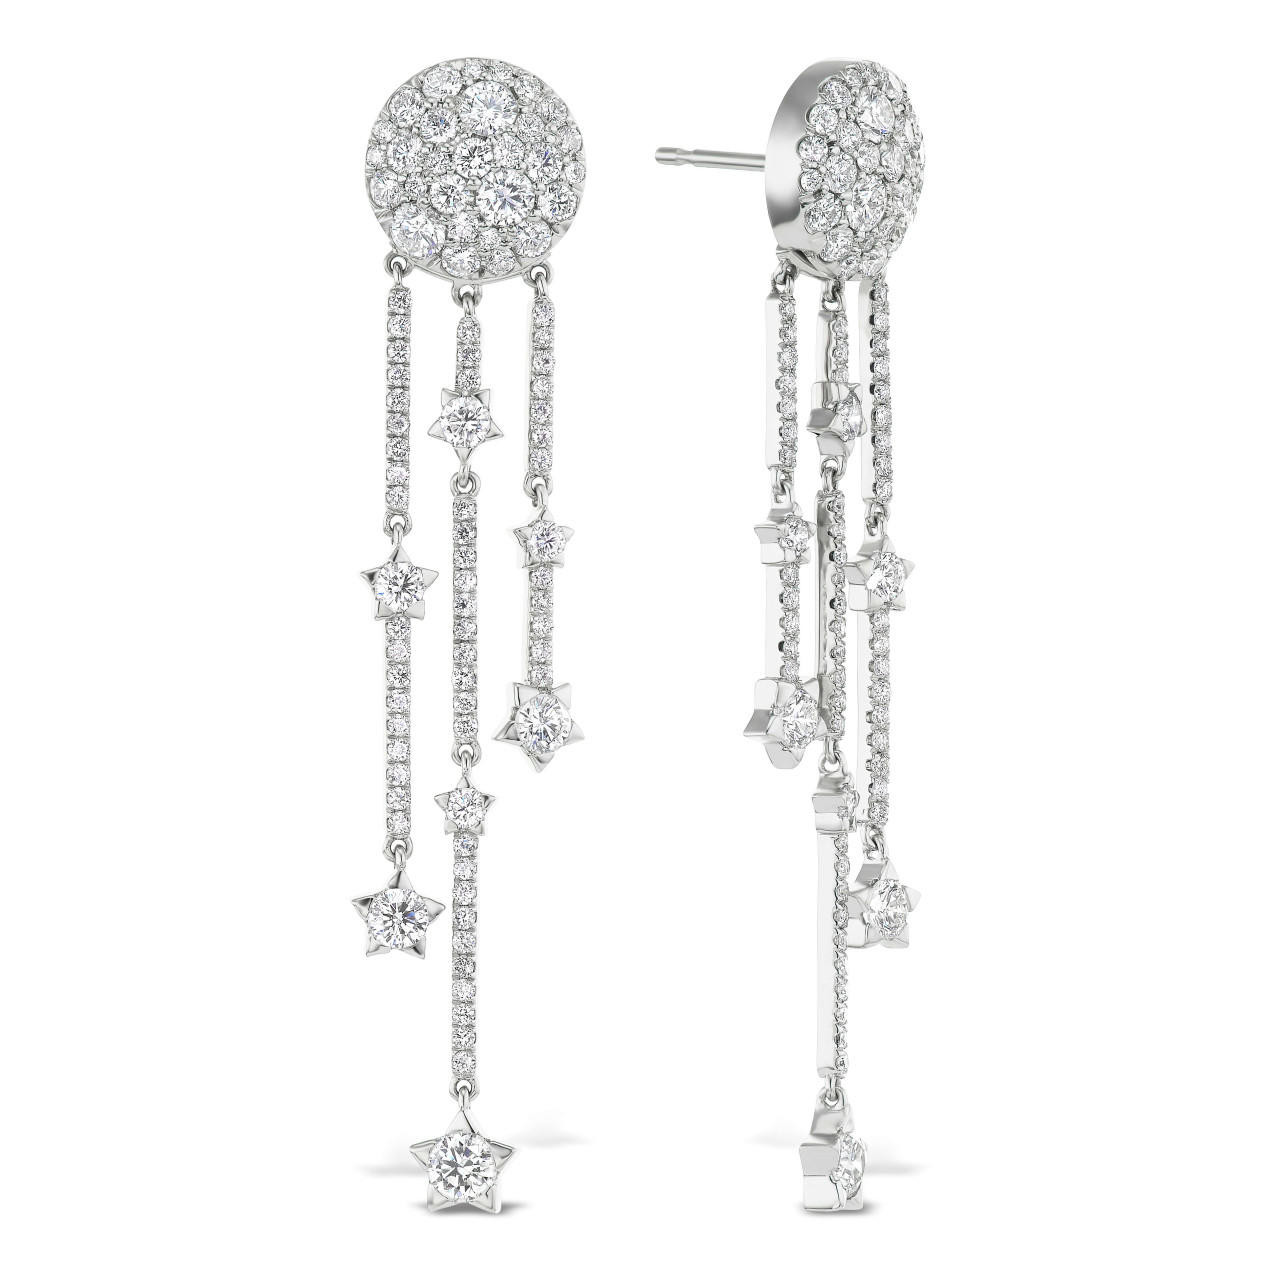 Gucci Double G earrings in Sterling Silver YBD627755001 - Jewelry